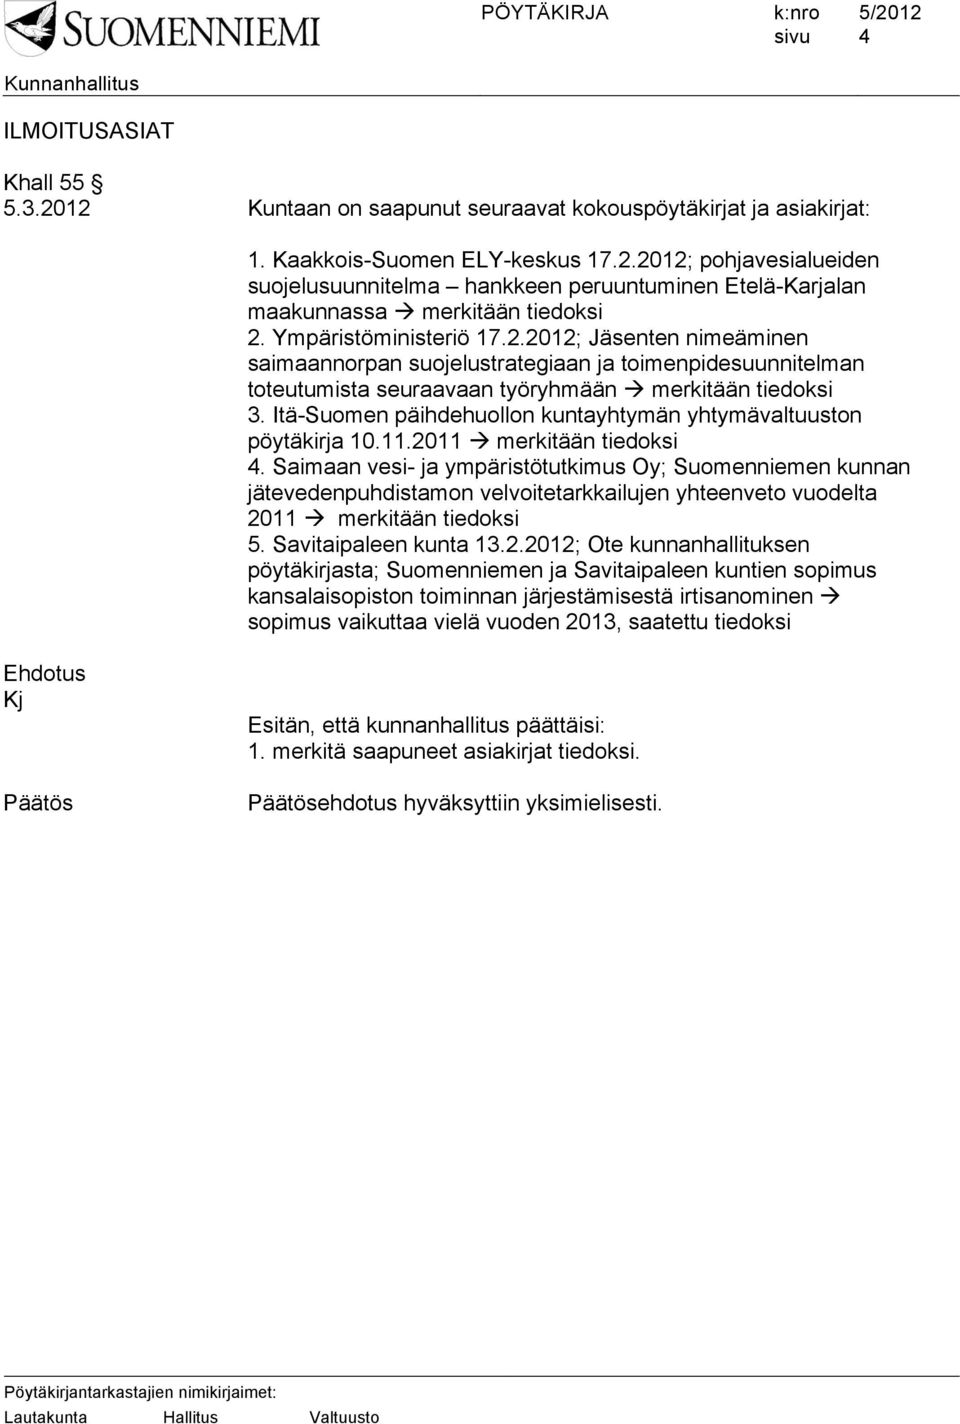 Itä-Suomen päihdehuollon kuntayhtymän yhtymävaltuuston pöytäkirja 10.11.2011 merkitään tiedoksi 4.